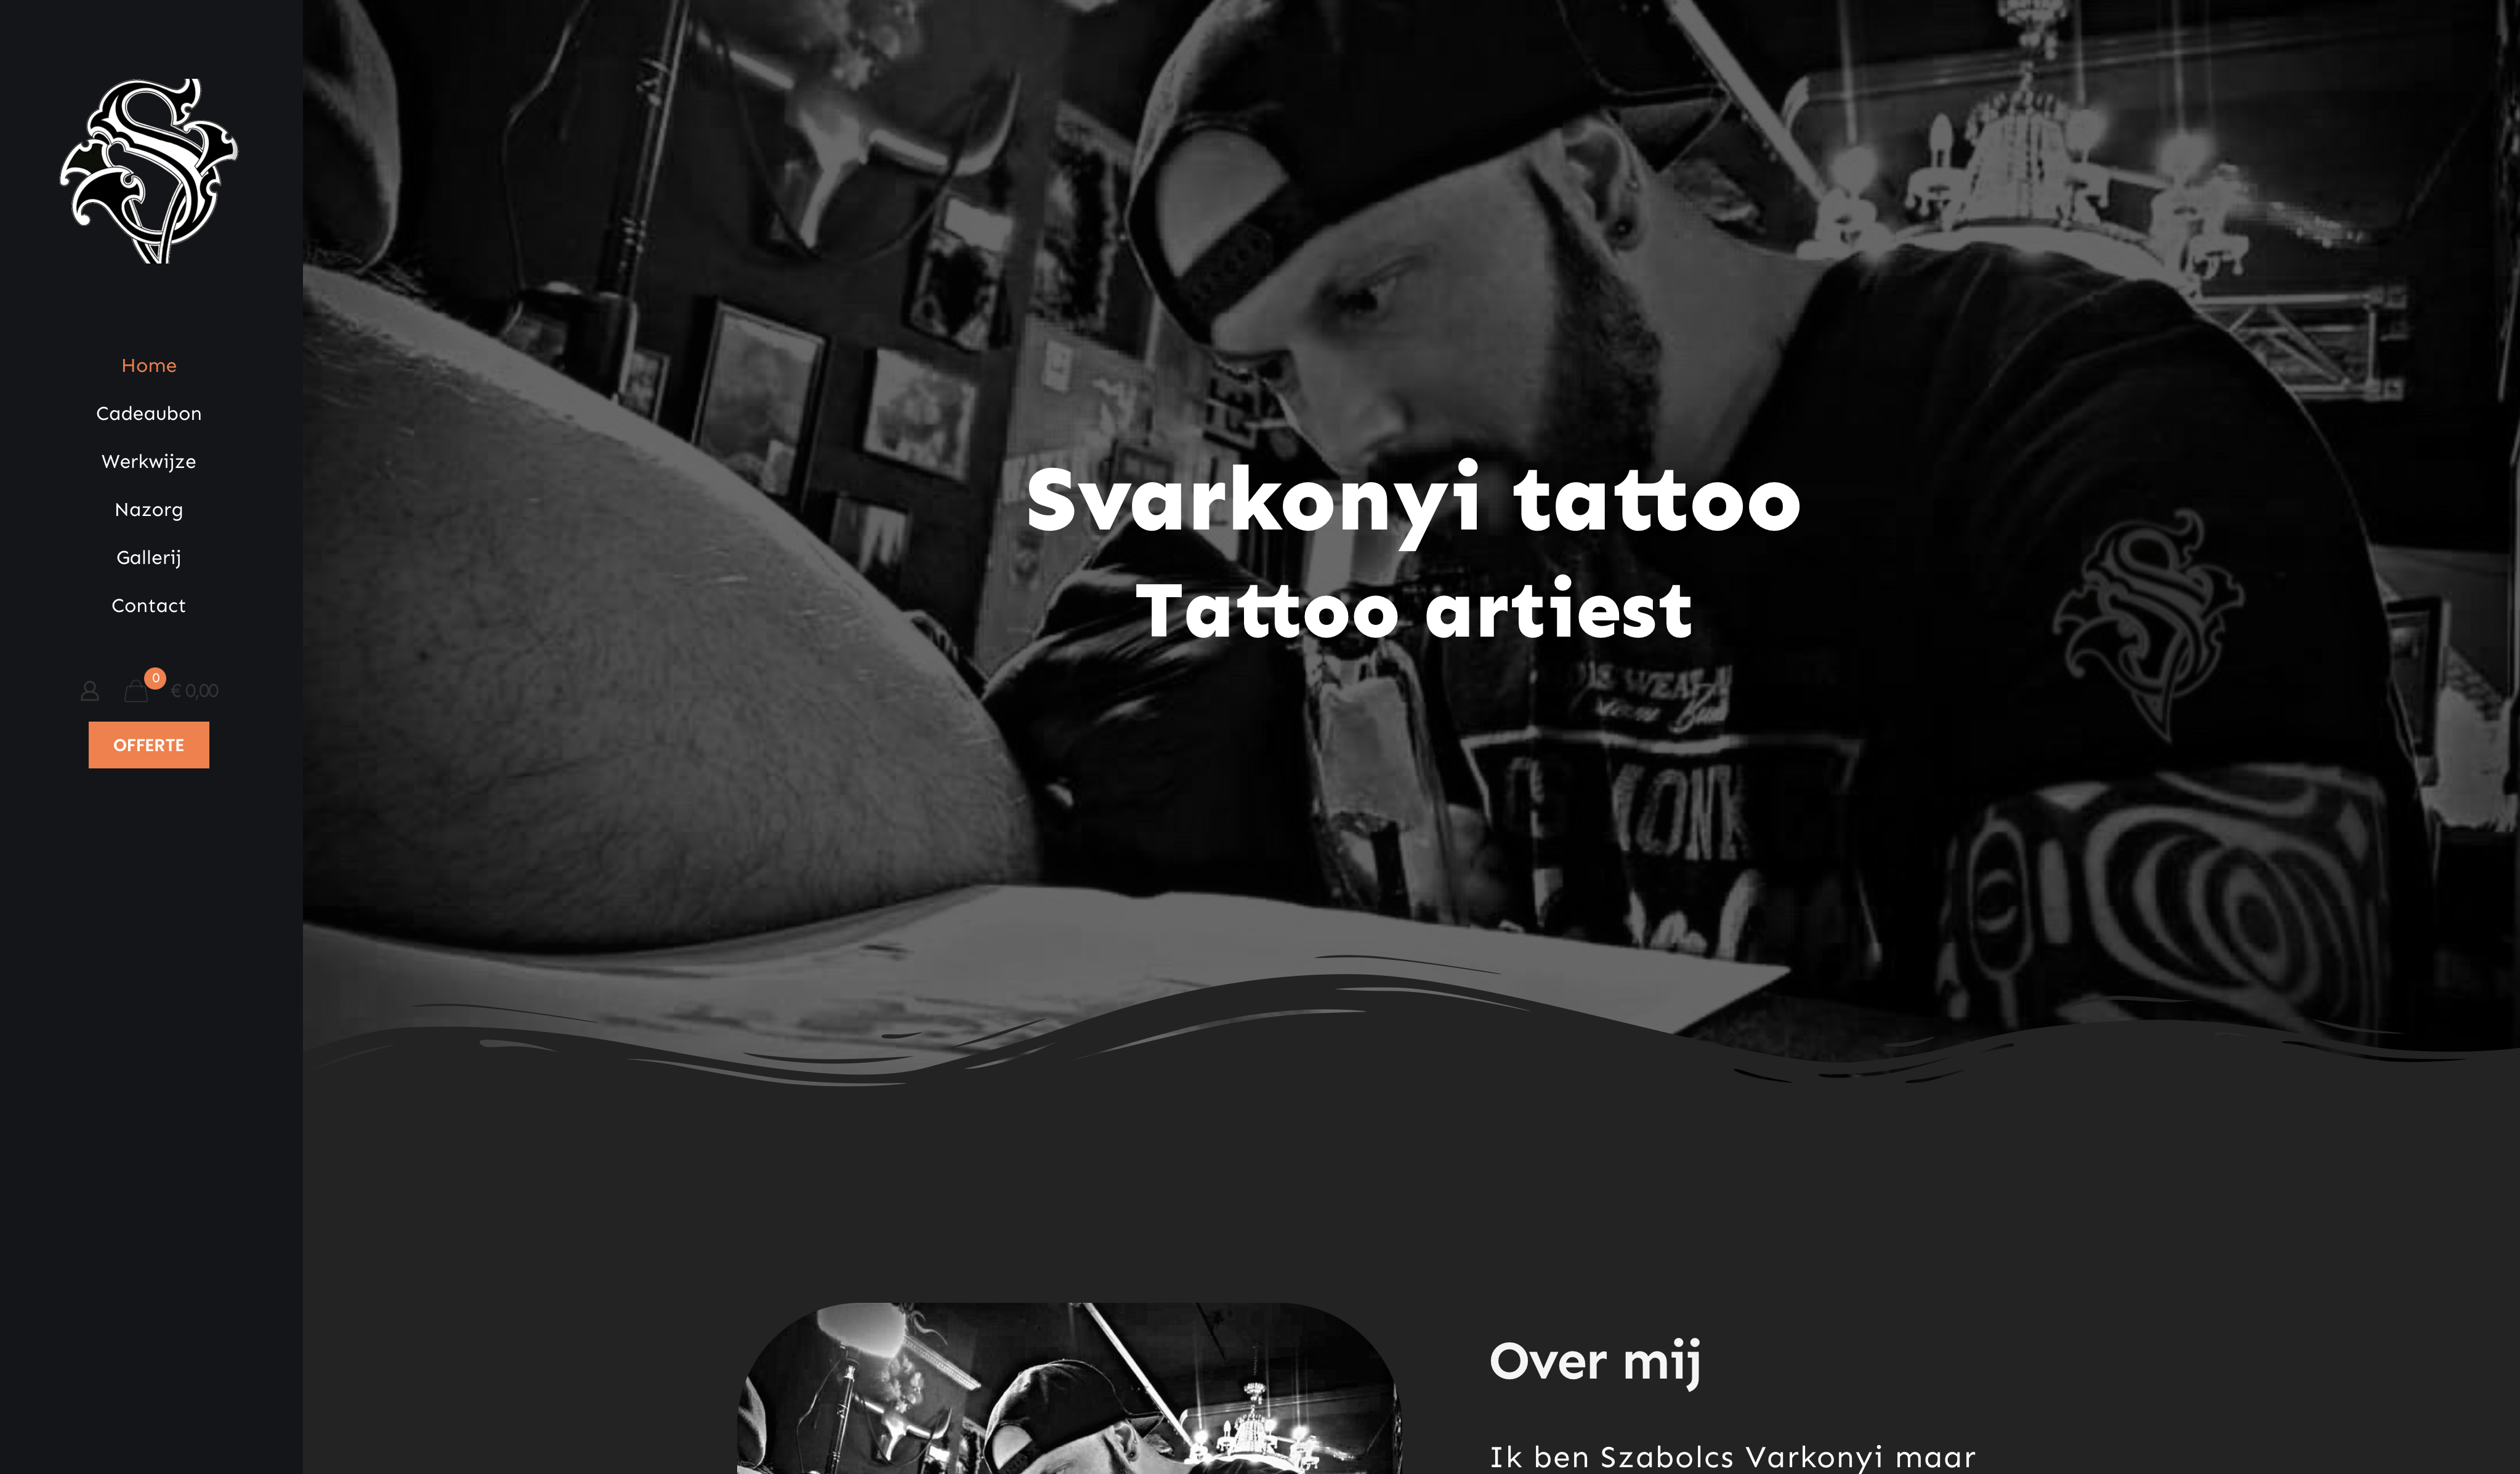 Svarkonyi tattoo – Tattoo artiest